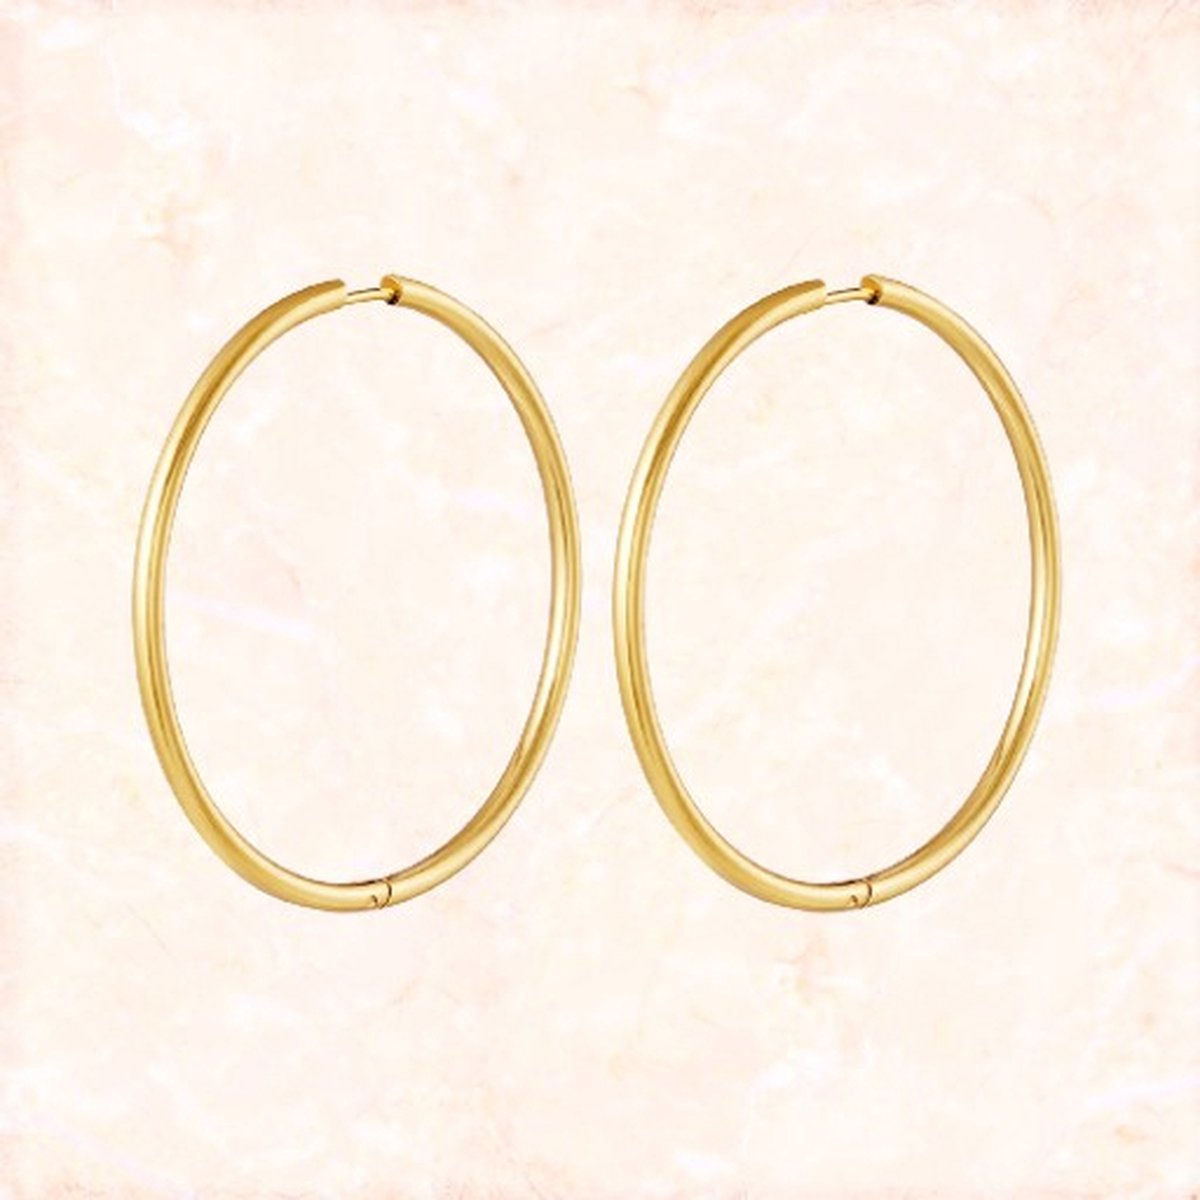 Jobo by Jet - Classics' earrings - Gouden classic oorbellen - Oorringen - Prachtige gouden ringen - Waterproef - Stainless steel - Unisex - Dames oorbellen